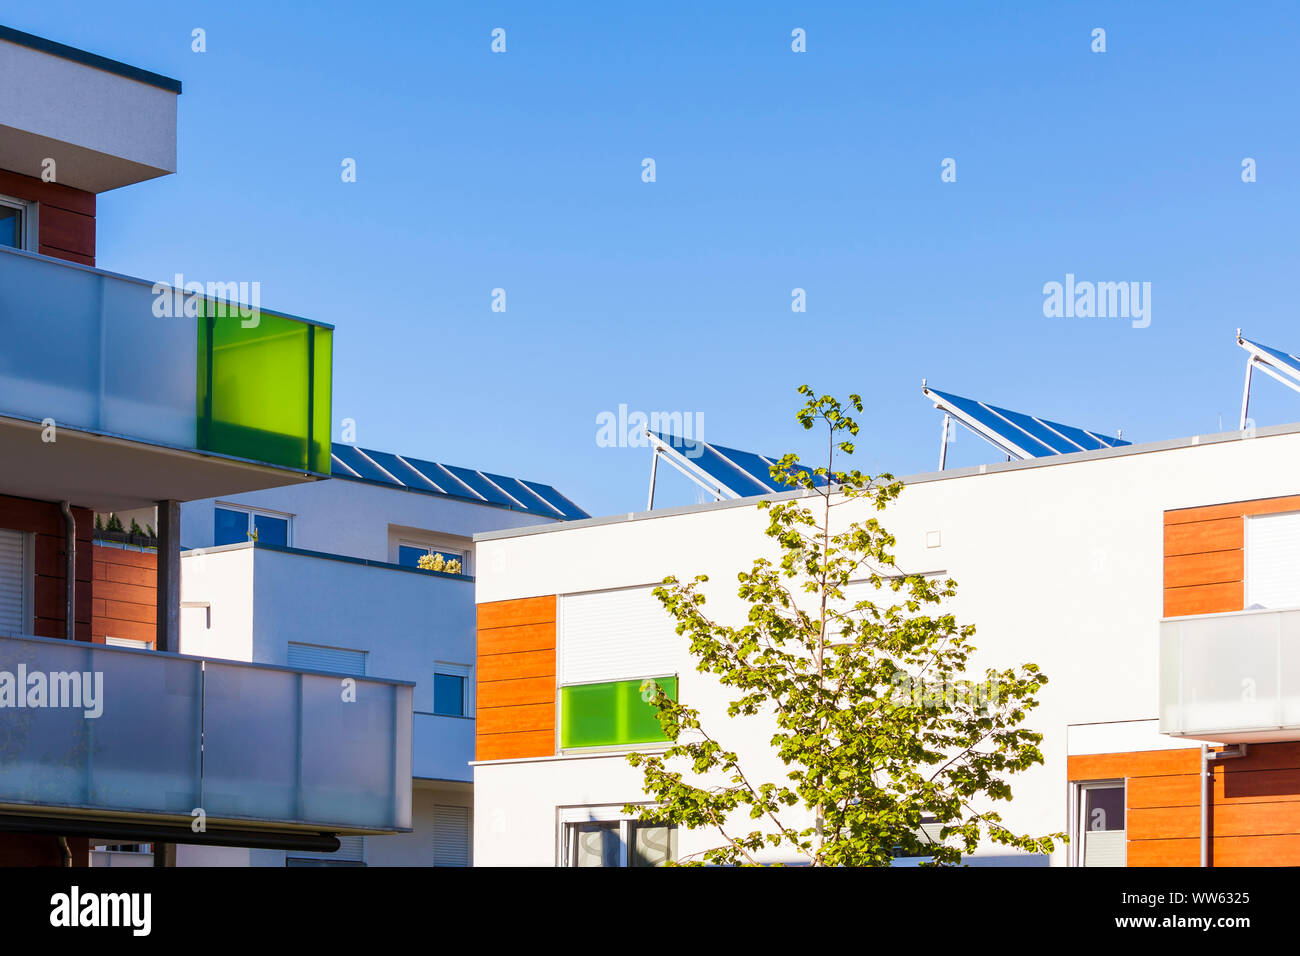 Germania Baden-Wuerttemberg, Waiblingen, insediamento solare RÃ¶tepark, condomini, impianto fotovoltaico solarthermal installazione e proprie unità di cogenerazione Foto Stock